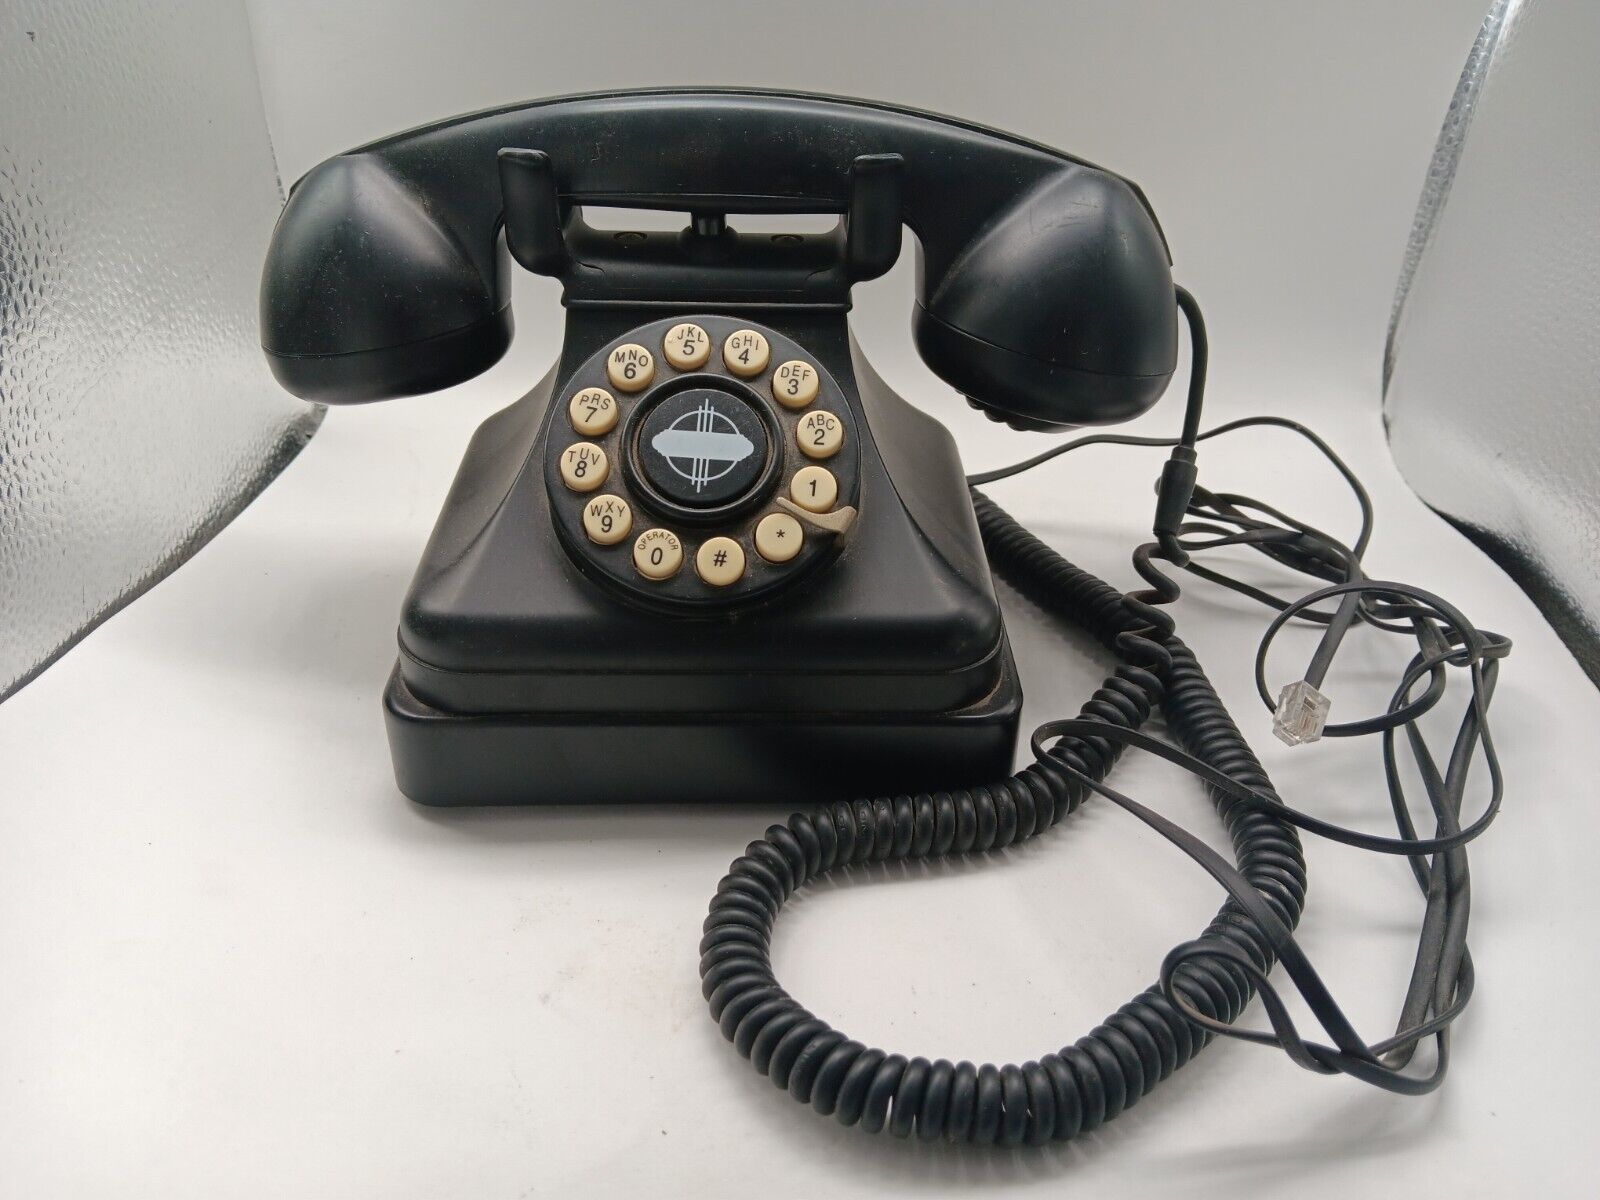 Crosley CR 62 retro style phone  - $19.79